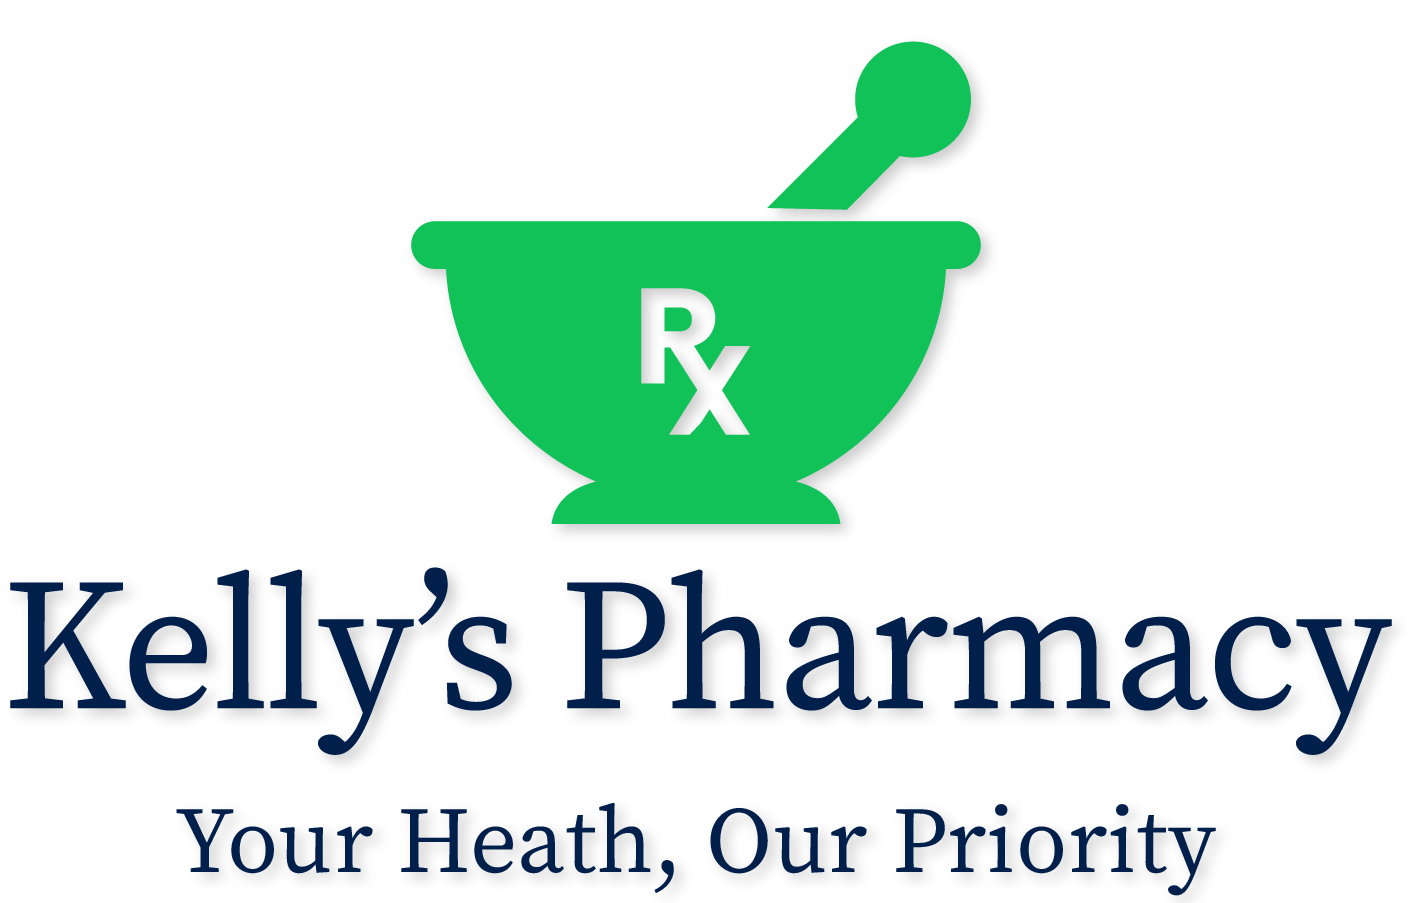 Kelly’s Pharmacy